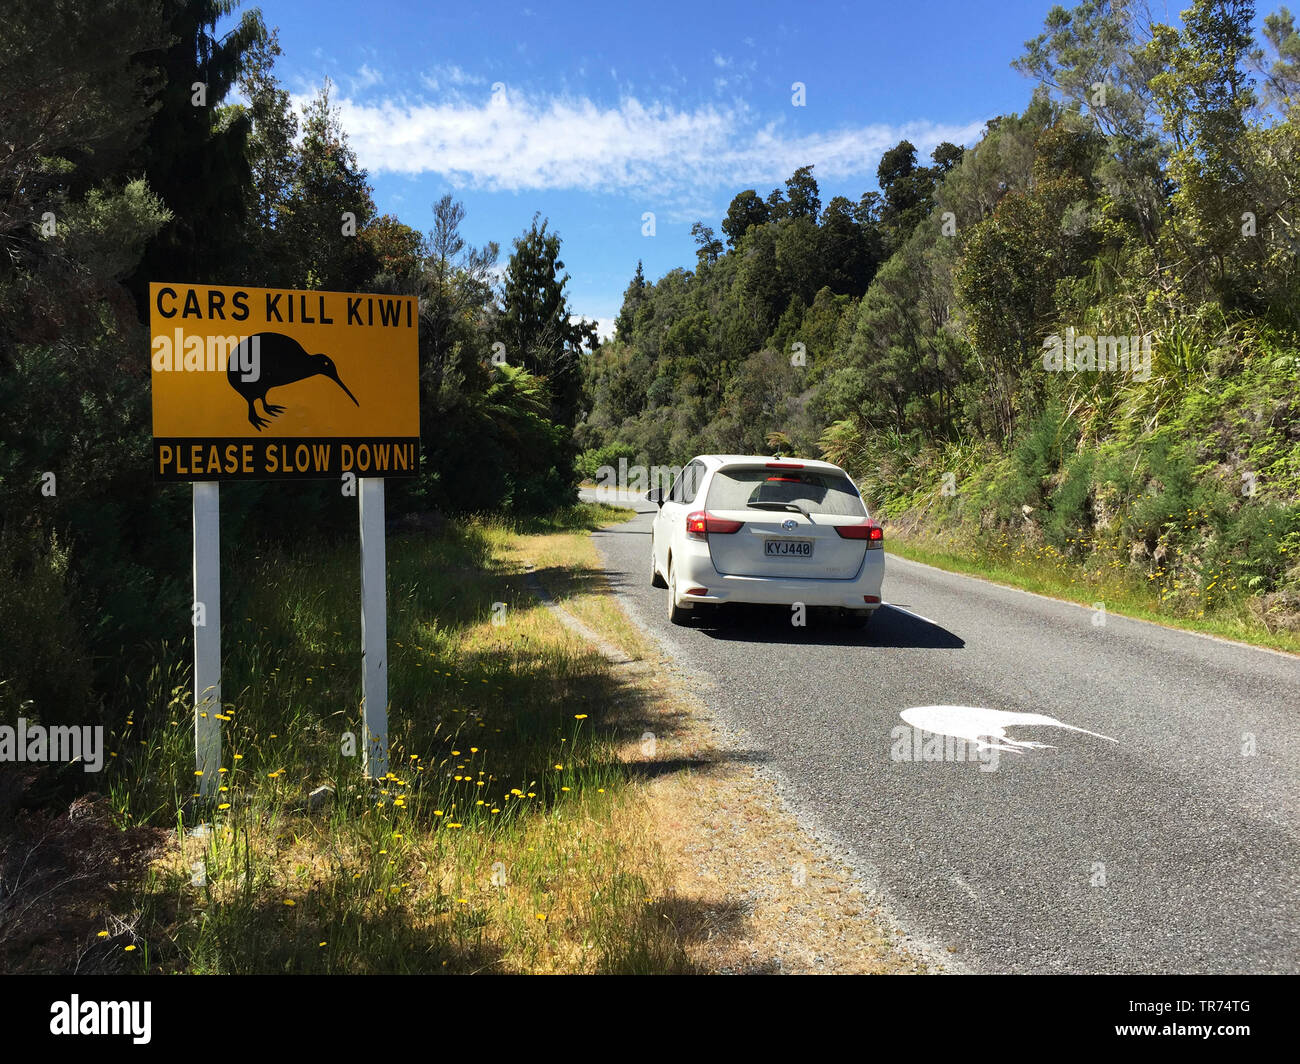 Kiwi, Okarito Okarito Rowi, brown kiwi (Apteryx rowi), big signalisation routière à côté de la route ont été mis en place pour sensibiliser les conducteurs d'Okarito possible sur la route, l'une des espèces d'oiseaux les plus rares dans le monde., Nouvelle-Zélande, île du Sud, Okarito Banque D'Images